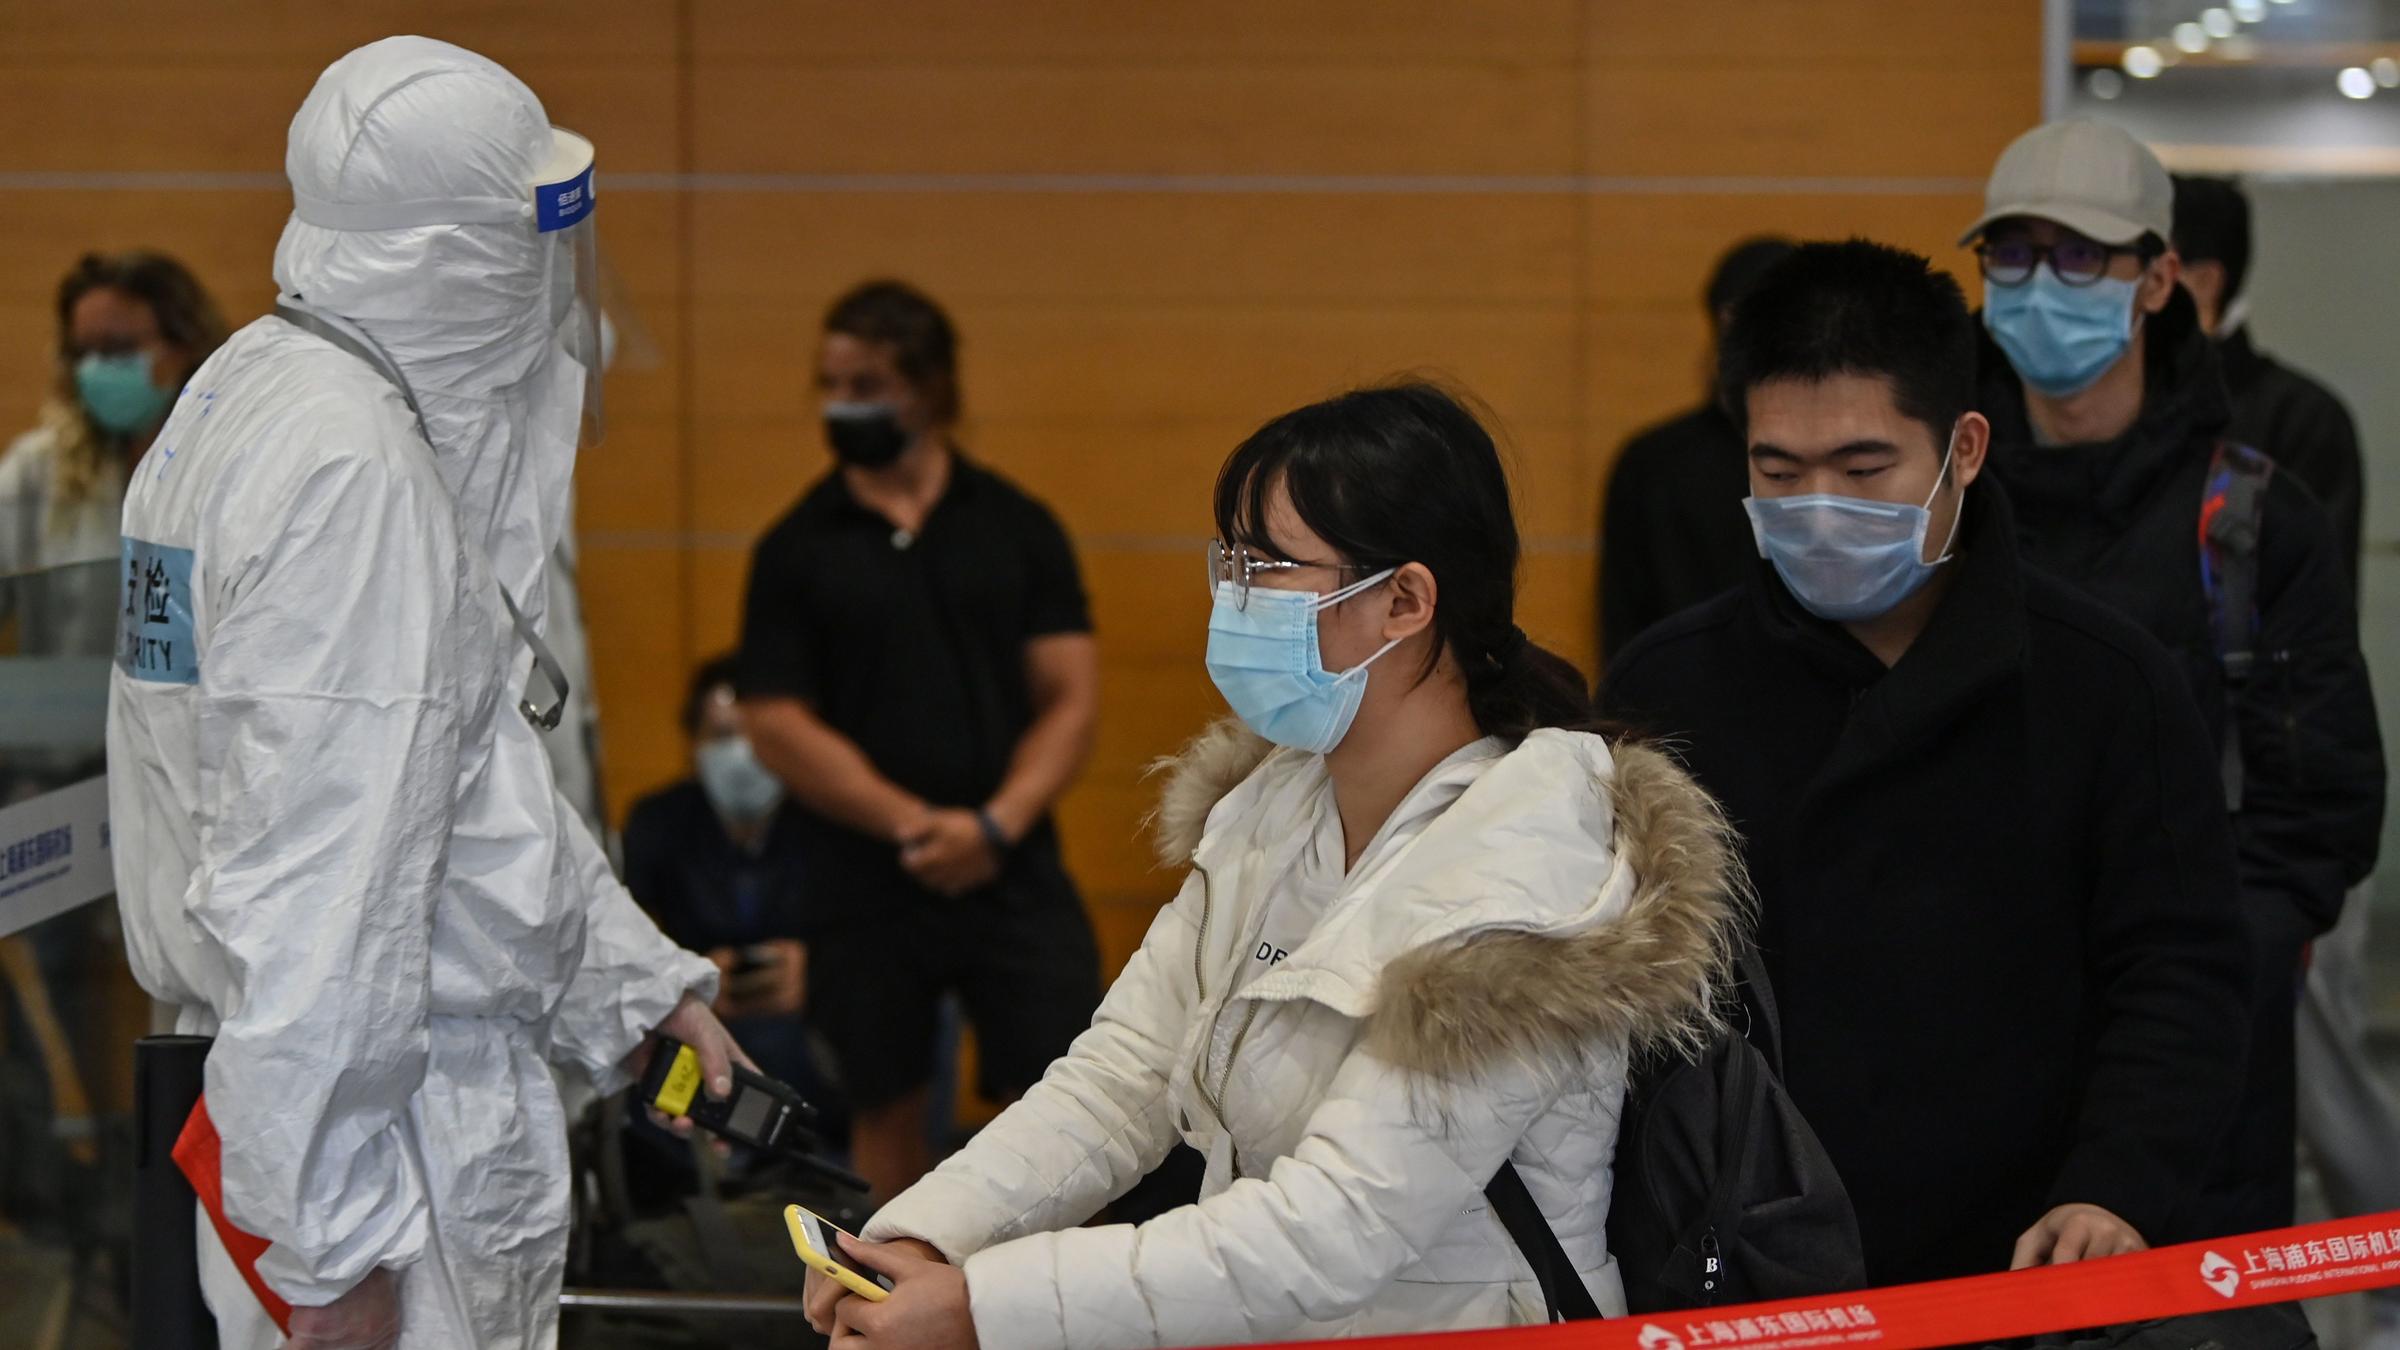 Σαγκάη: Σκηνές πανικού  με χιλιάδες Κινέζους να προσπαθούν να αποδράσουν από αεροδρόμιο λόγω καραντίνας